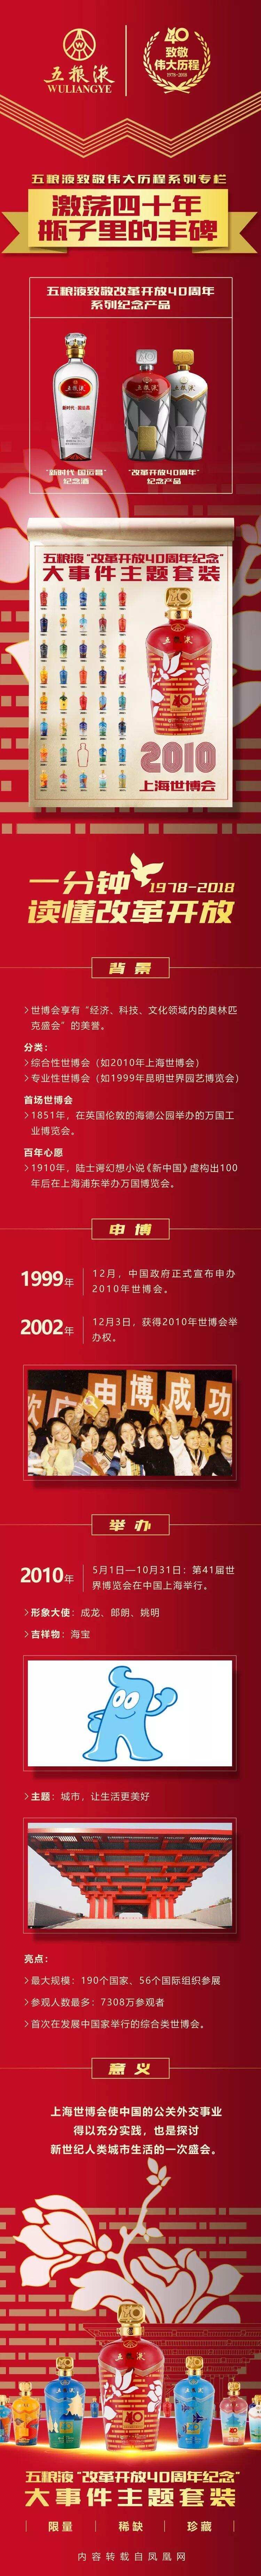 激荡四十年 · 2010 上海世博会｜五粮液致敬伟大历程系列专栏（三十三）